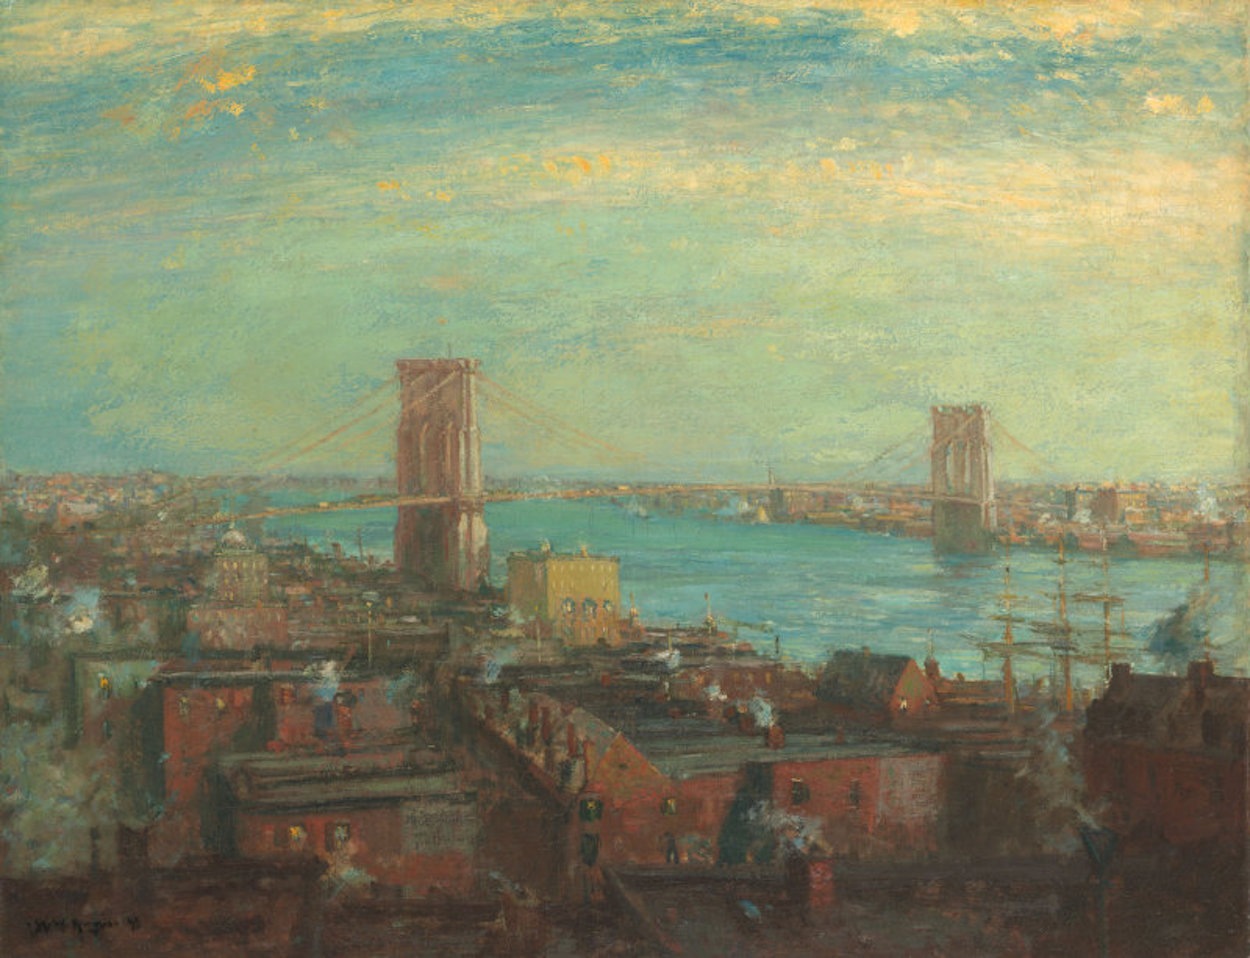 جسر بروكلين  by Henry Ward Ranger - 1899 - 28 1/2 x 36 1/8 انش 